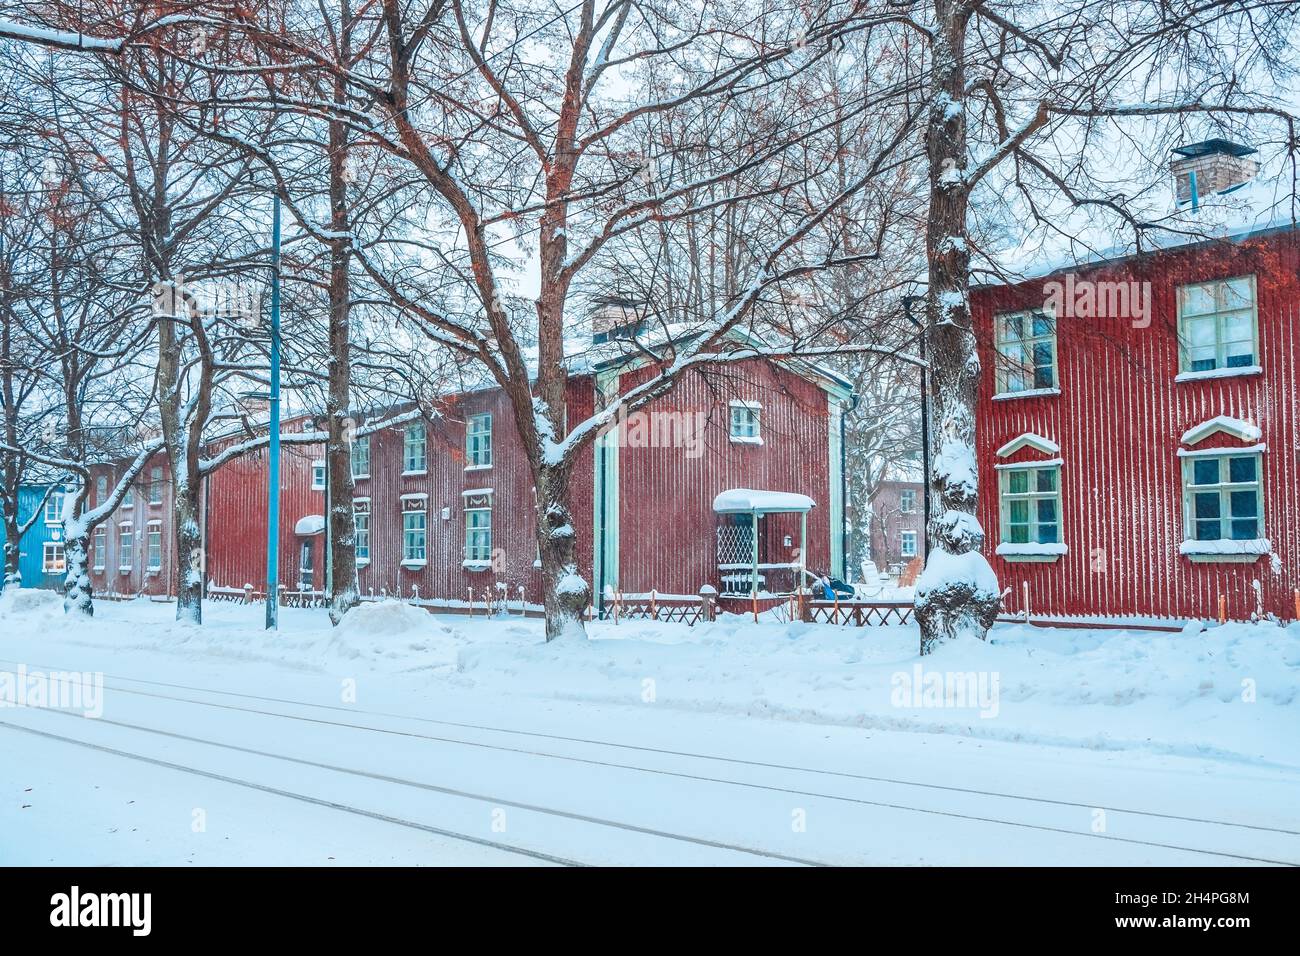 Magnifique hiver finlandais à la campagne.Vieilles maisons en bois rouge en ville en Finlande.Vue sur une rue enneigée après une chute de neige.Façades de bâtiments colorées Banque D'Images